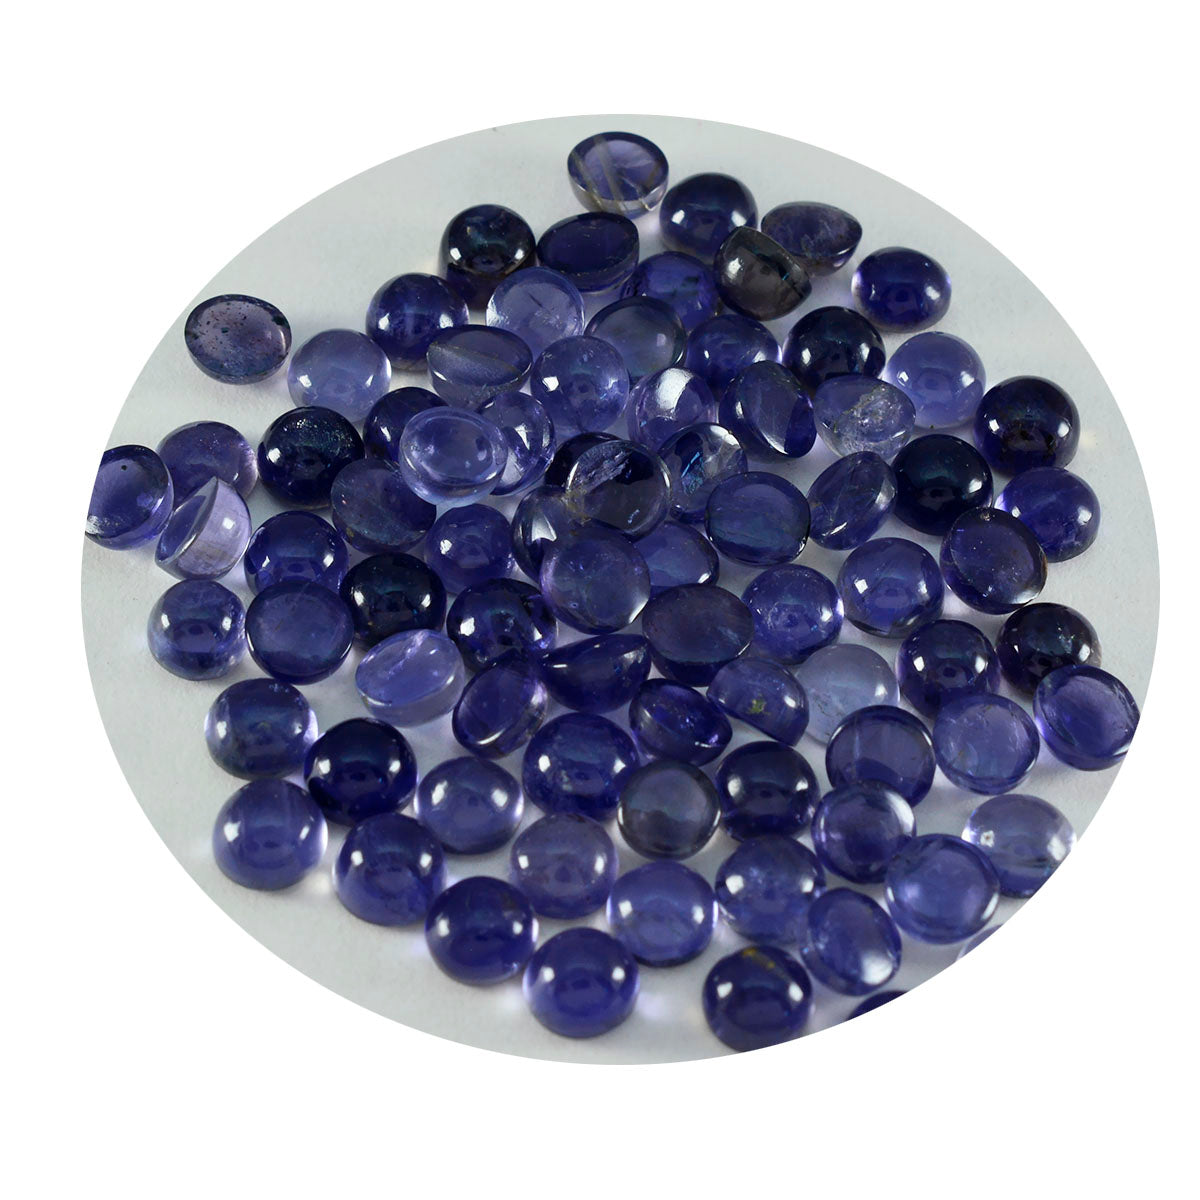 Riyogems 1PC blauwe ioliet cabochon 4x4 mm ronde vorm A kwaliteitsedelstenen